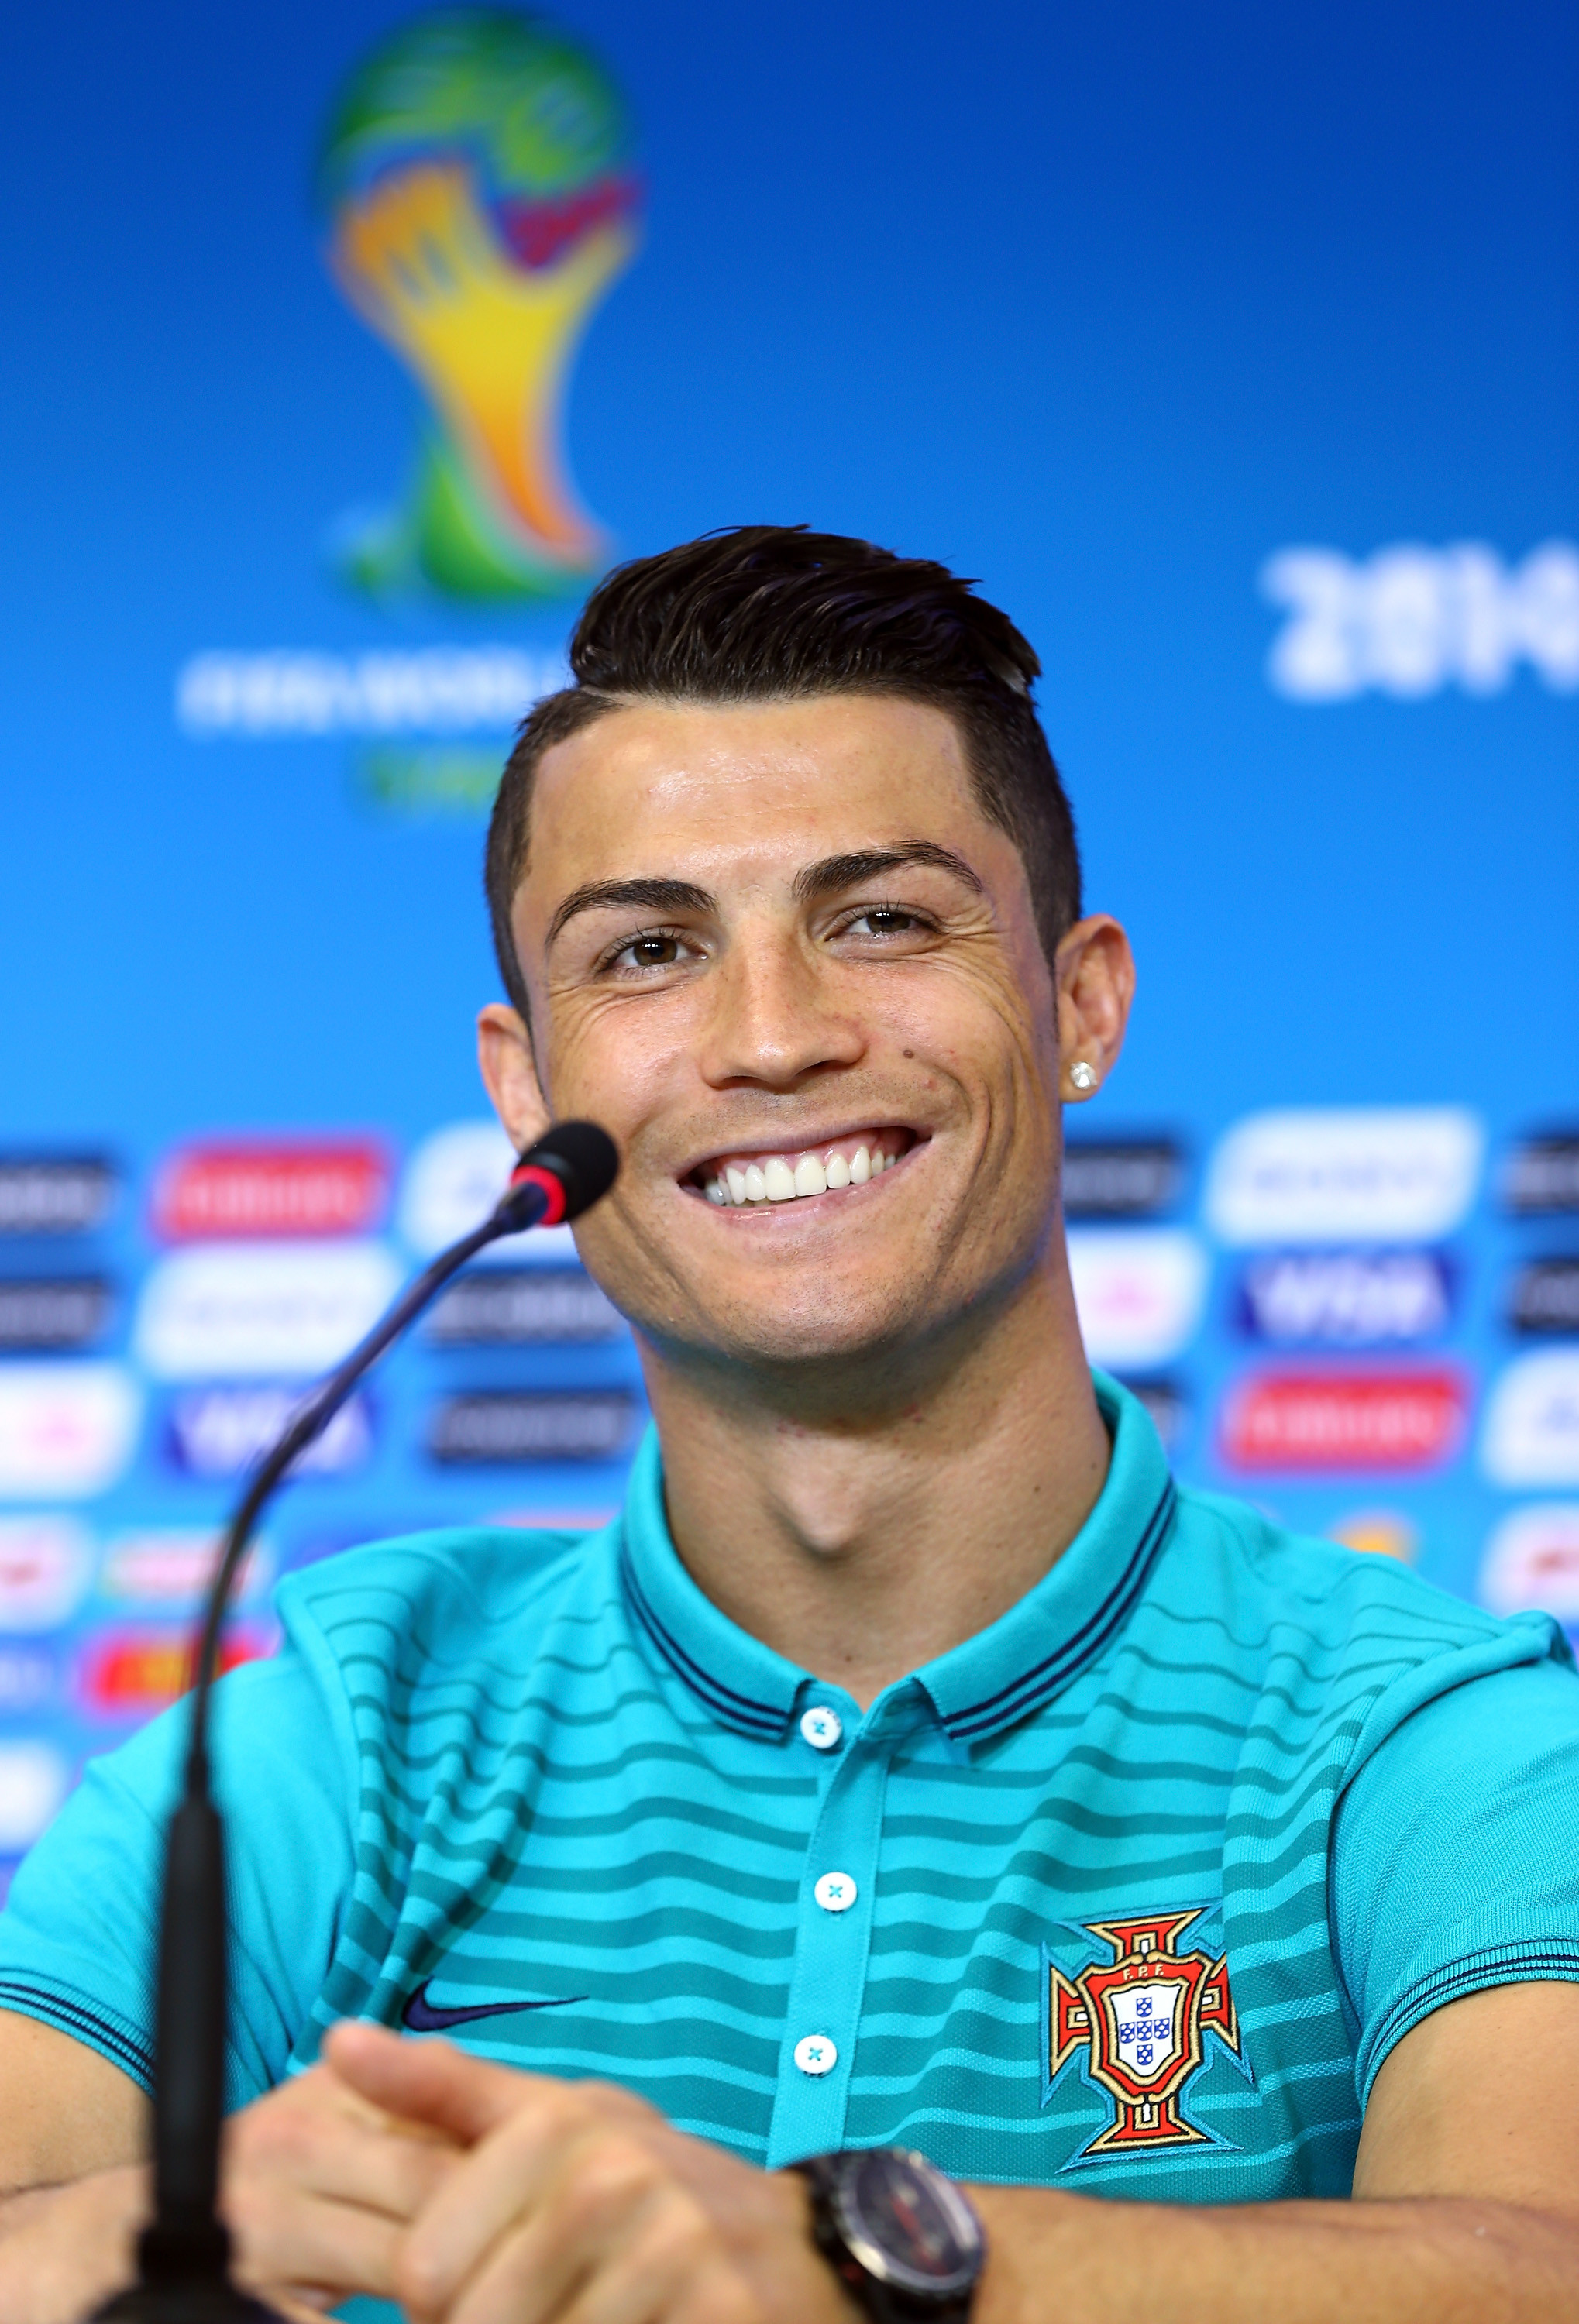 Best 20+ Ronaldo news ideas on Pinterest | Cr7 news, Ronaldo goals and Gold  football cleats